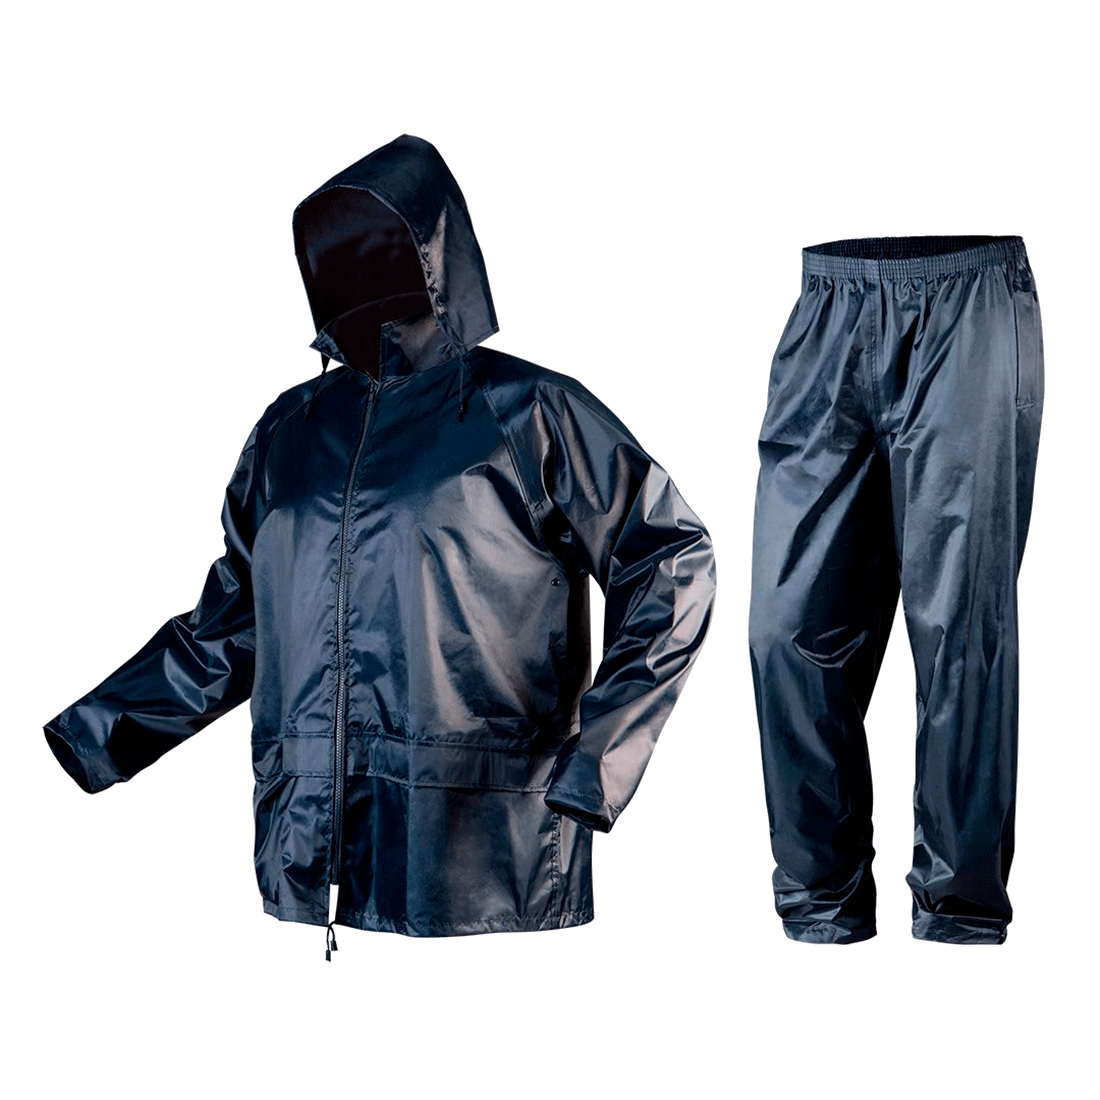 Дождевик NEO (куртка+брюки), размер XXXL (81-800-XXXL)